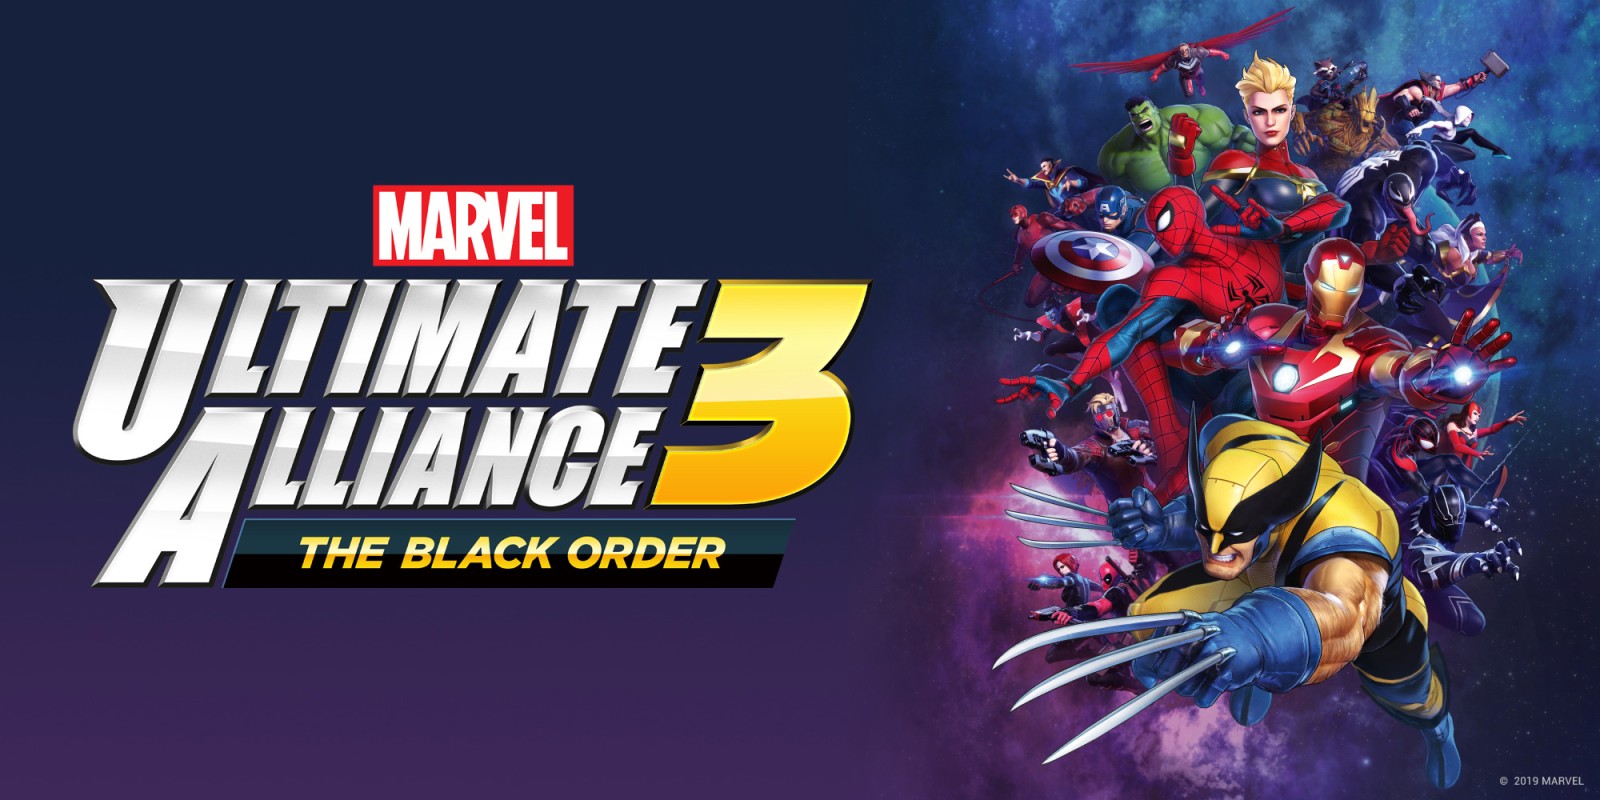 Marvel Ultimate Alliance 3: The Black Order, ufficializzata la data di uscita